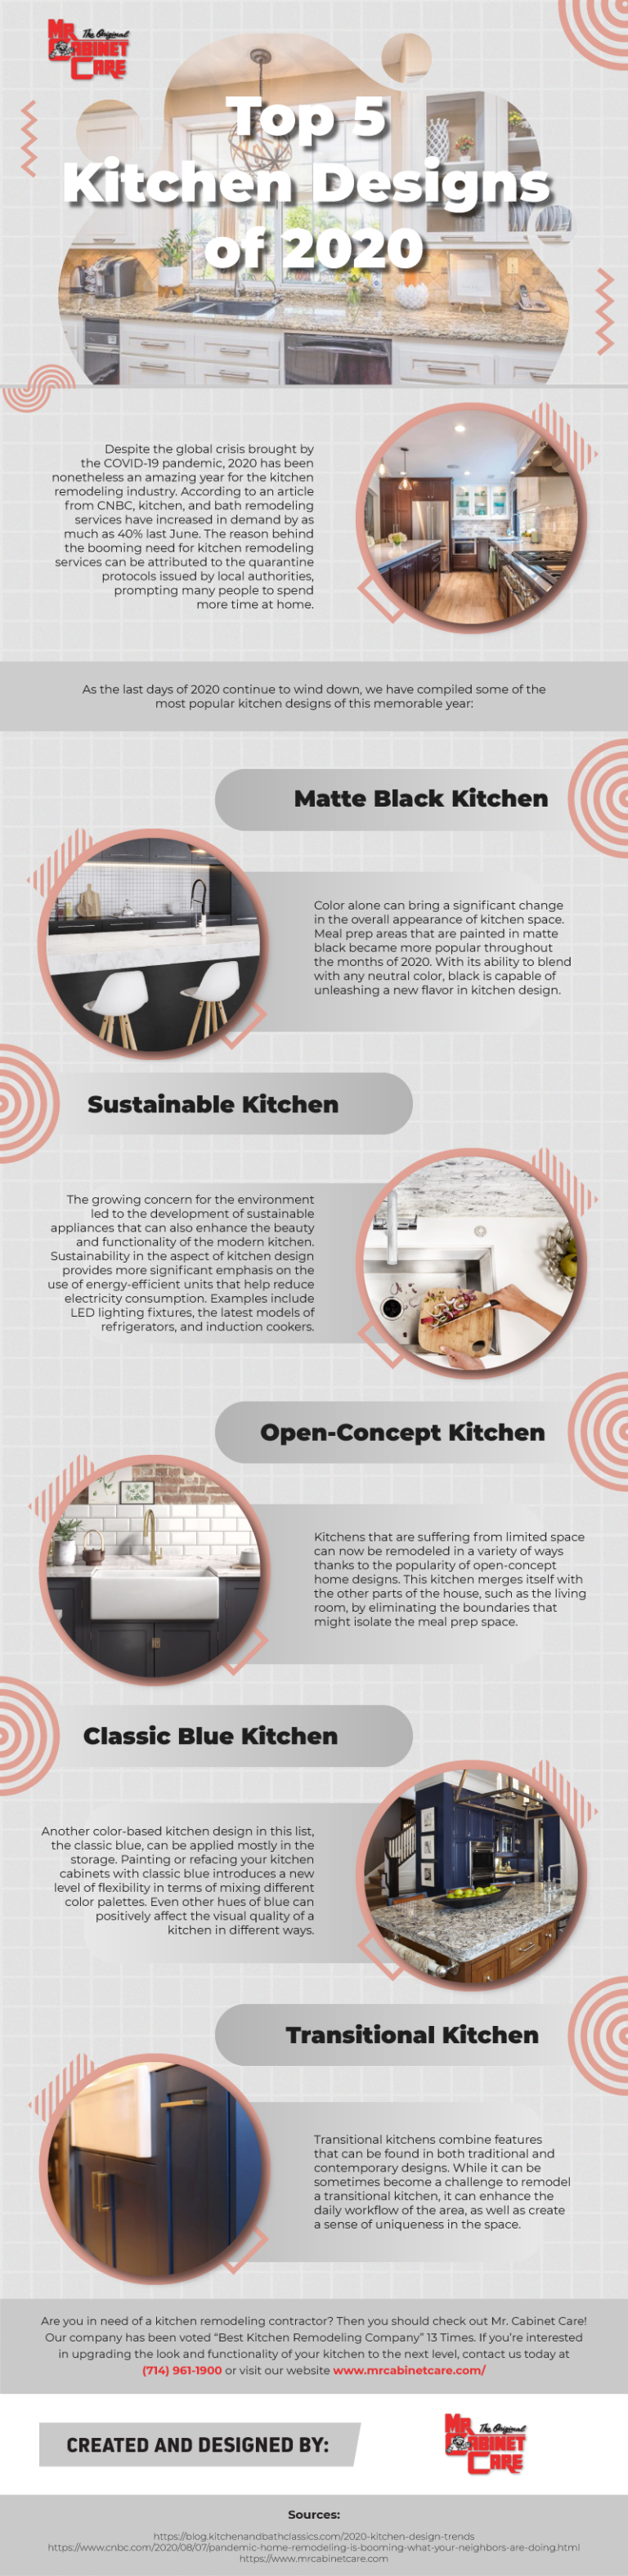 kitchen design 2020 - infographic